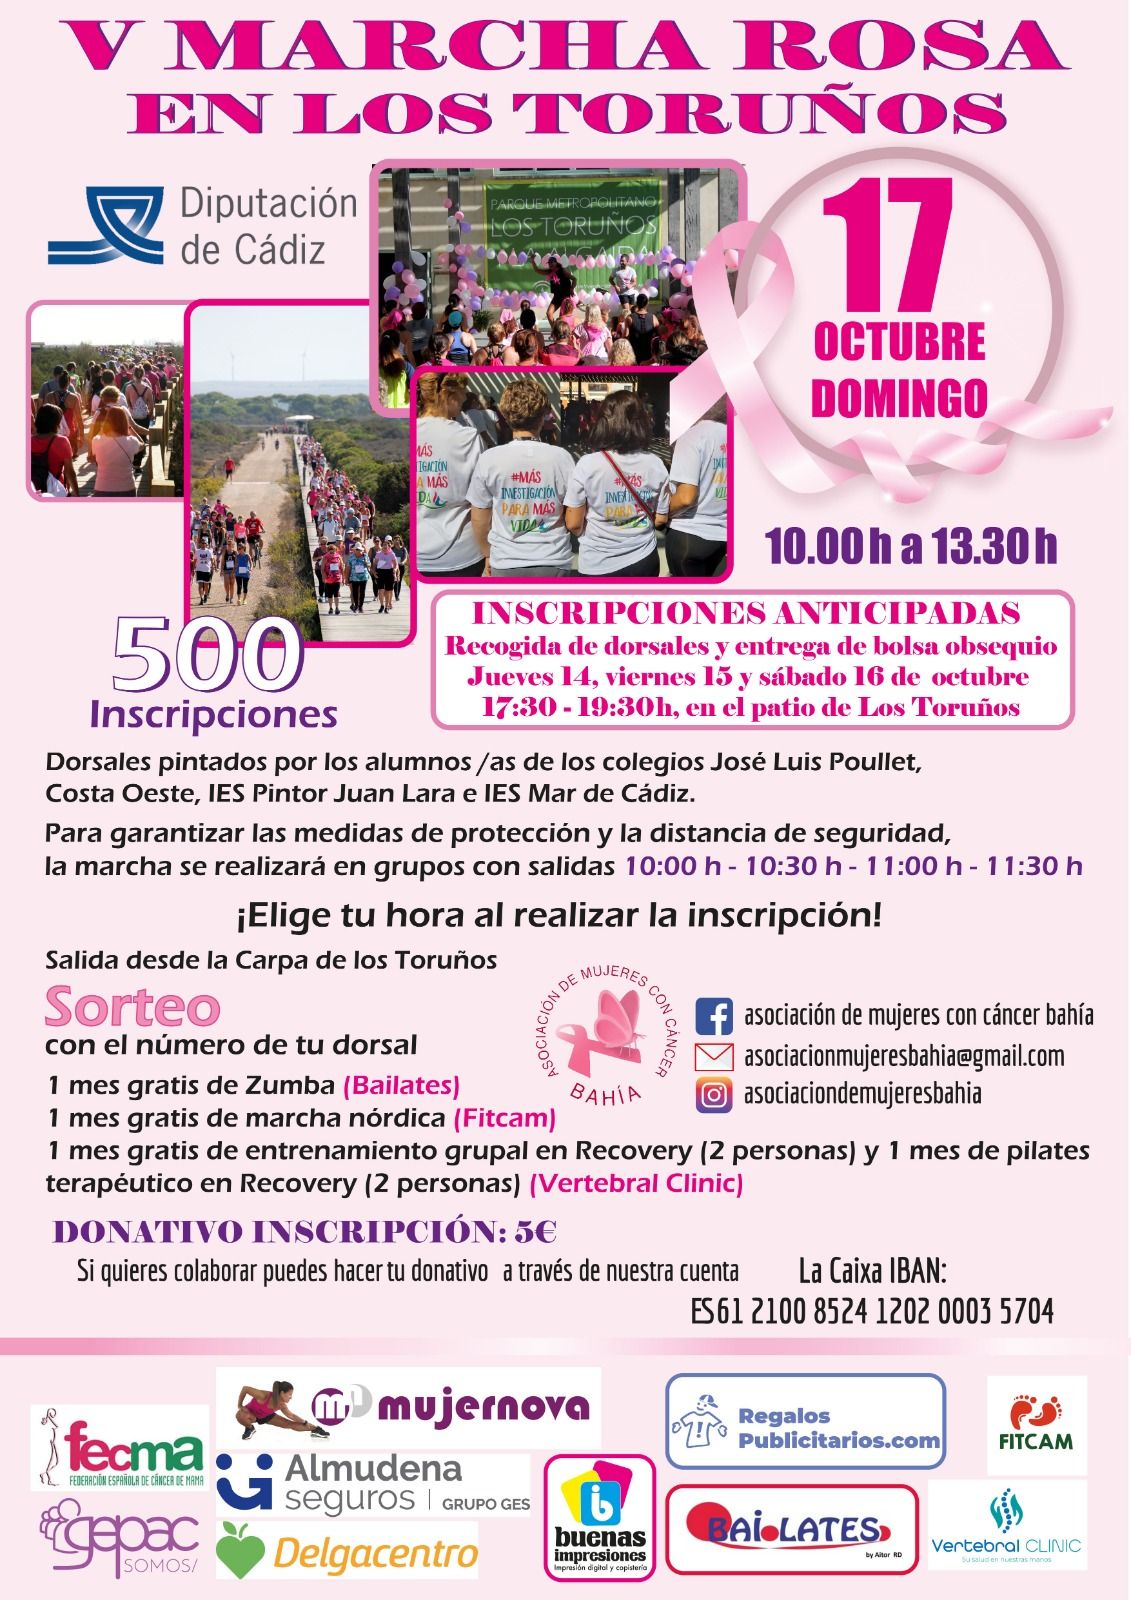 Cartel de la Marcha Rosa en Los Toruños.